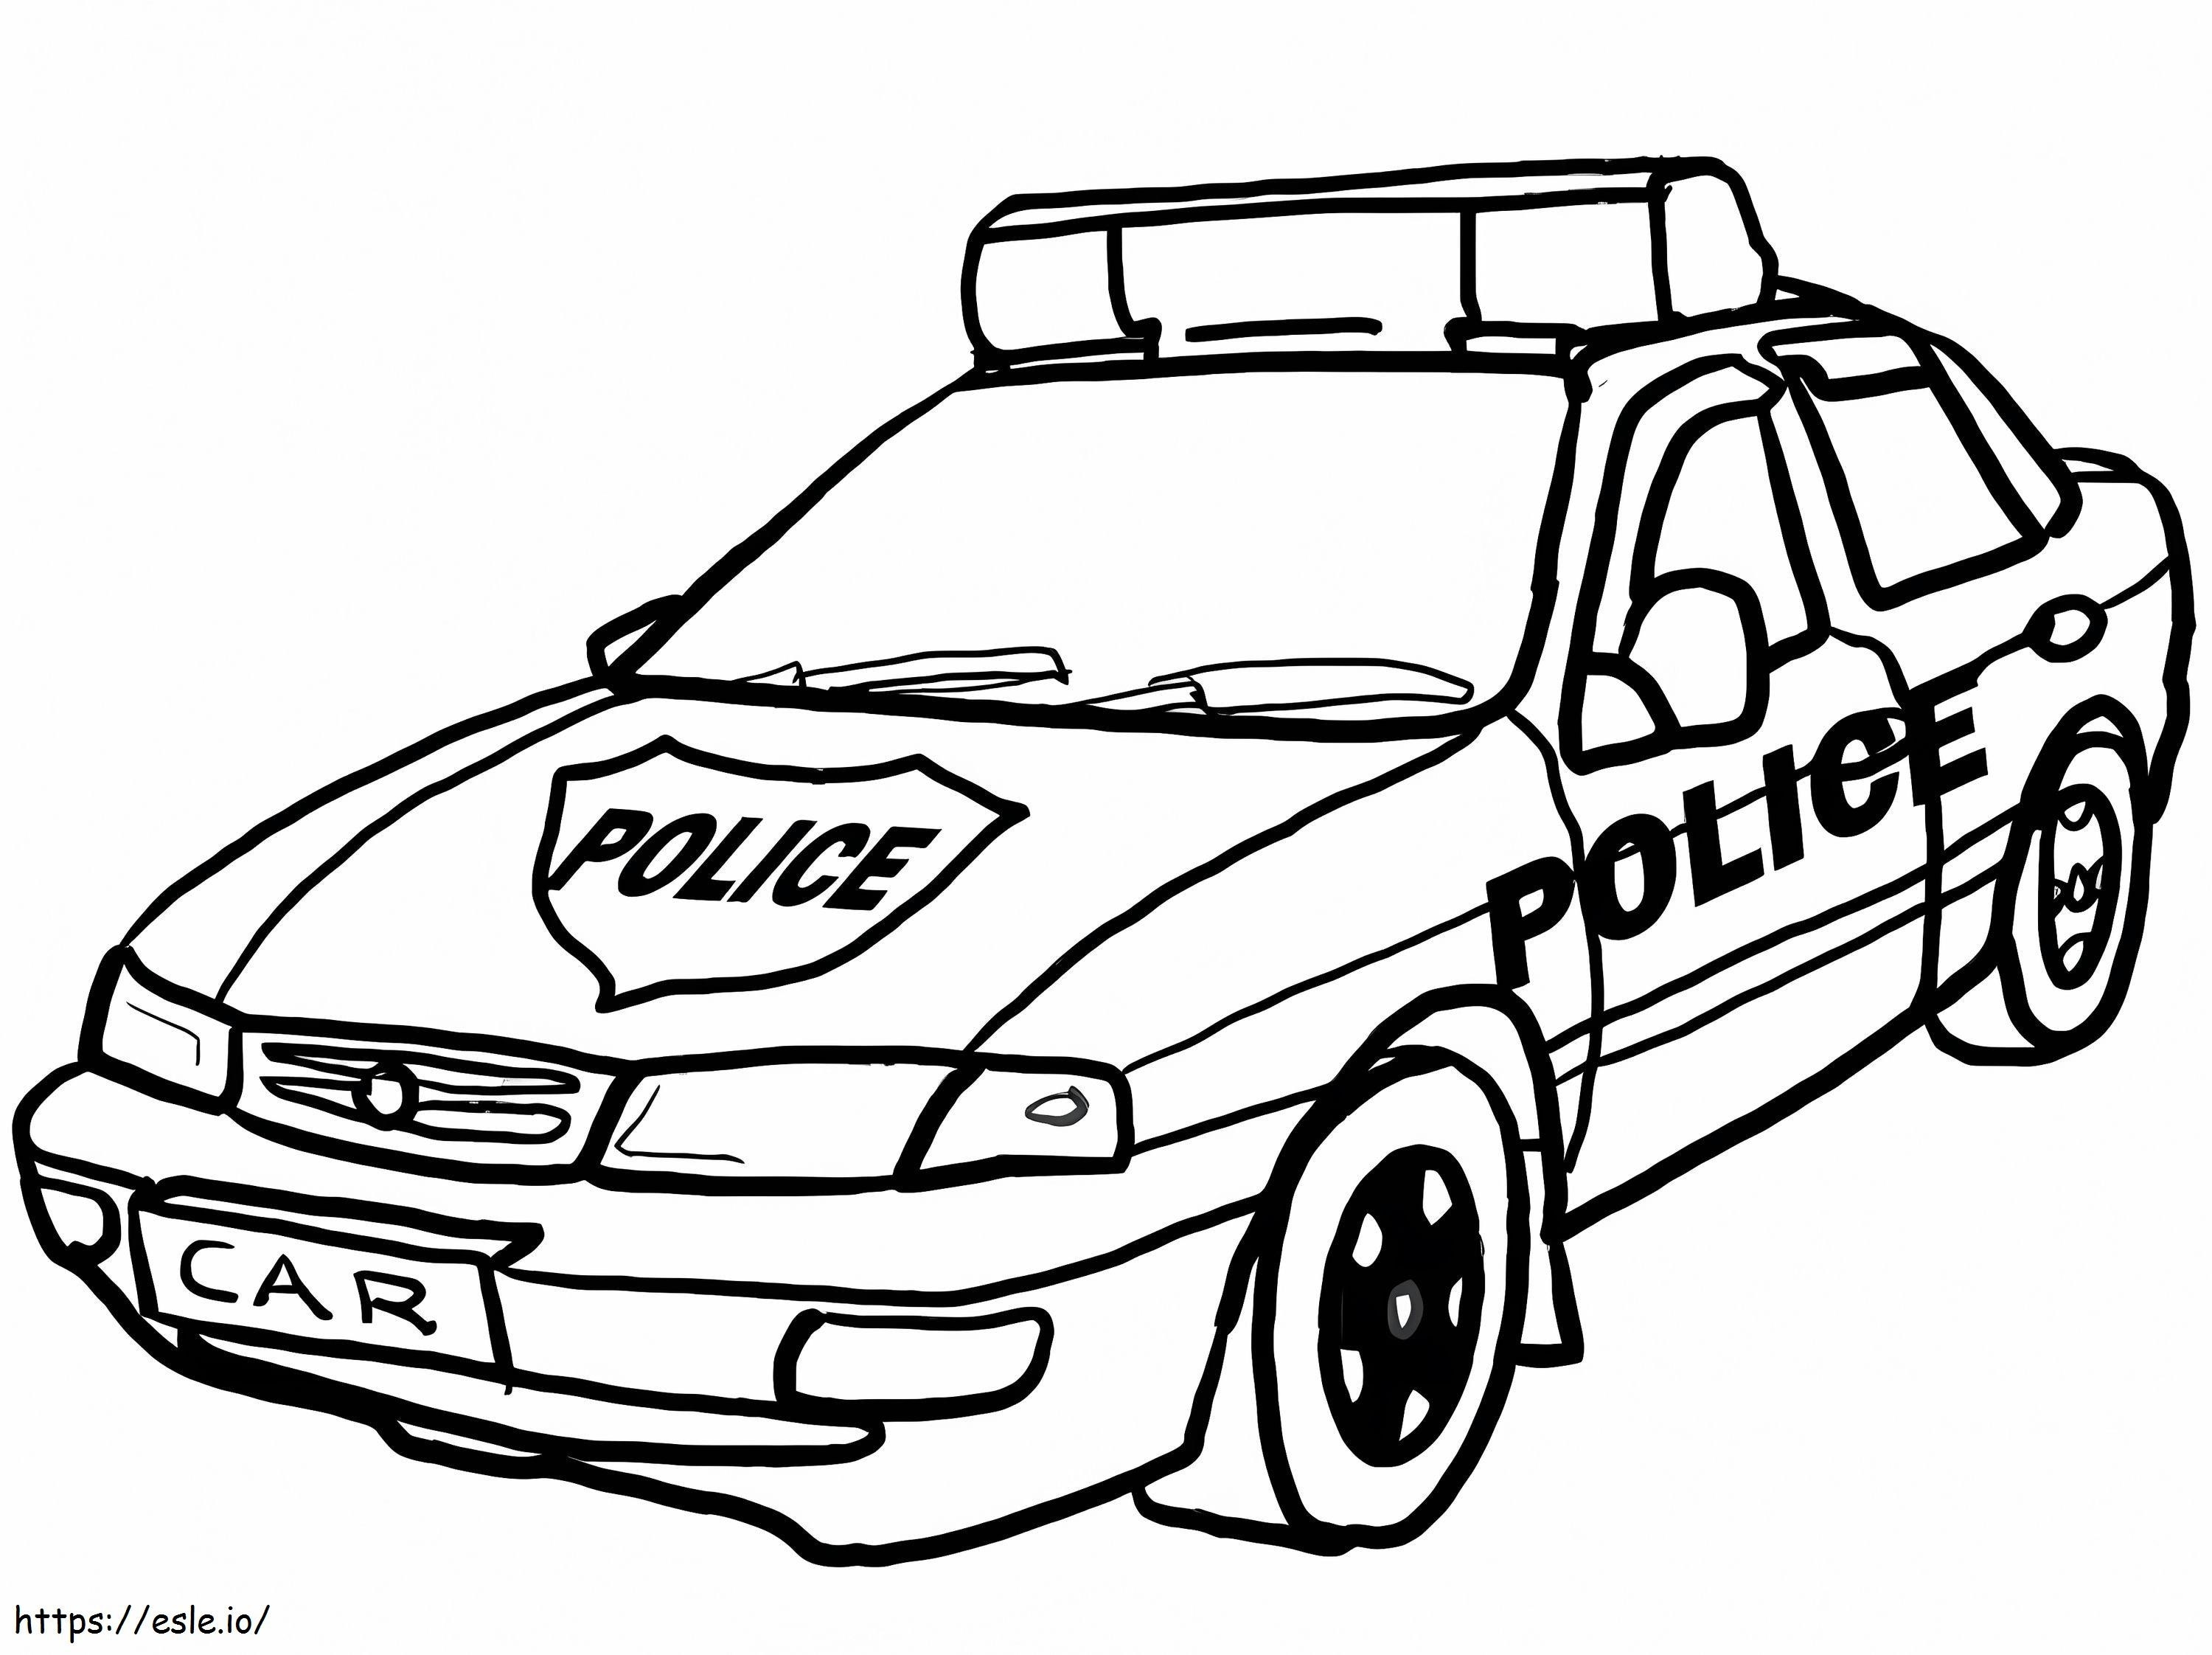 Politieauto 4 kleurplaat kleurplaat